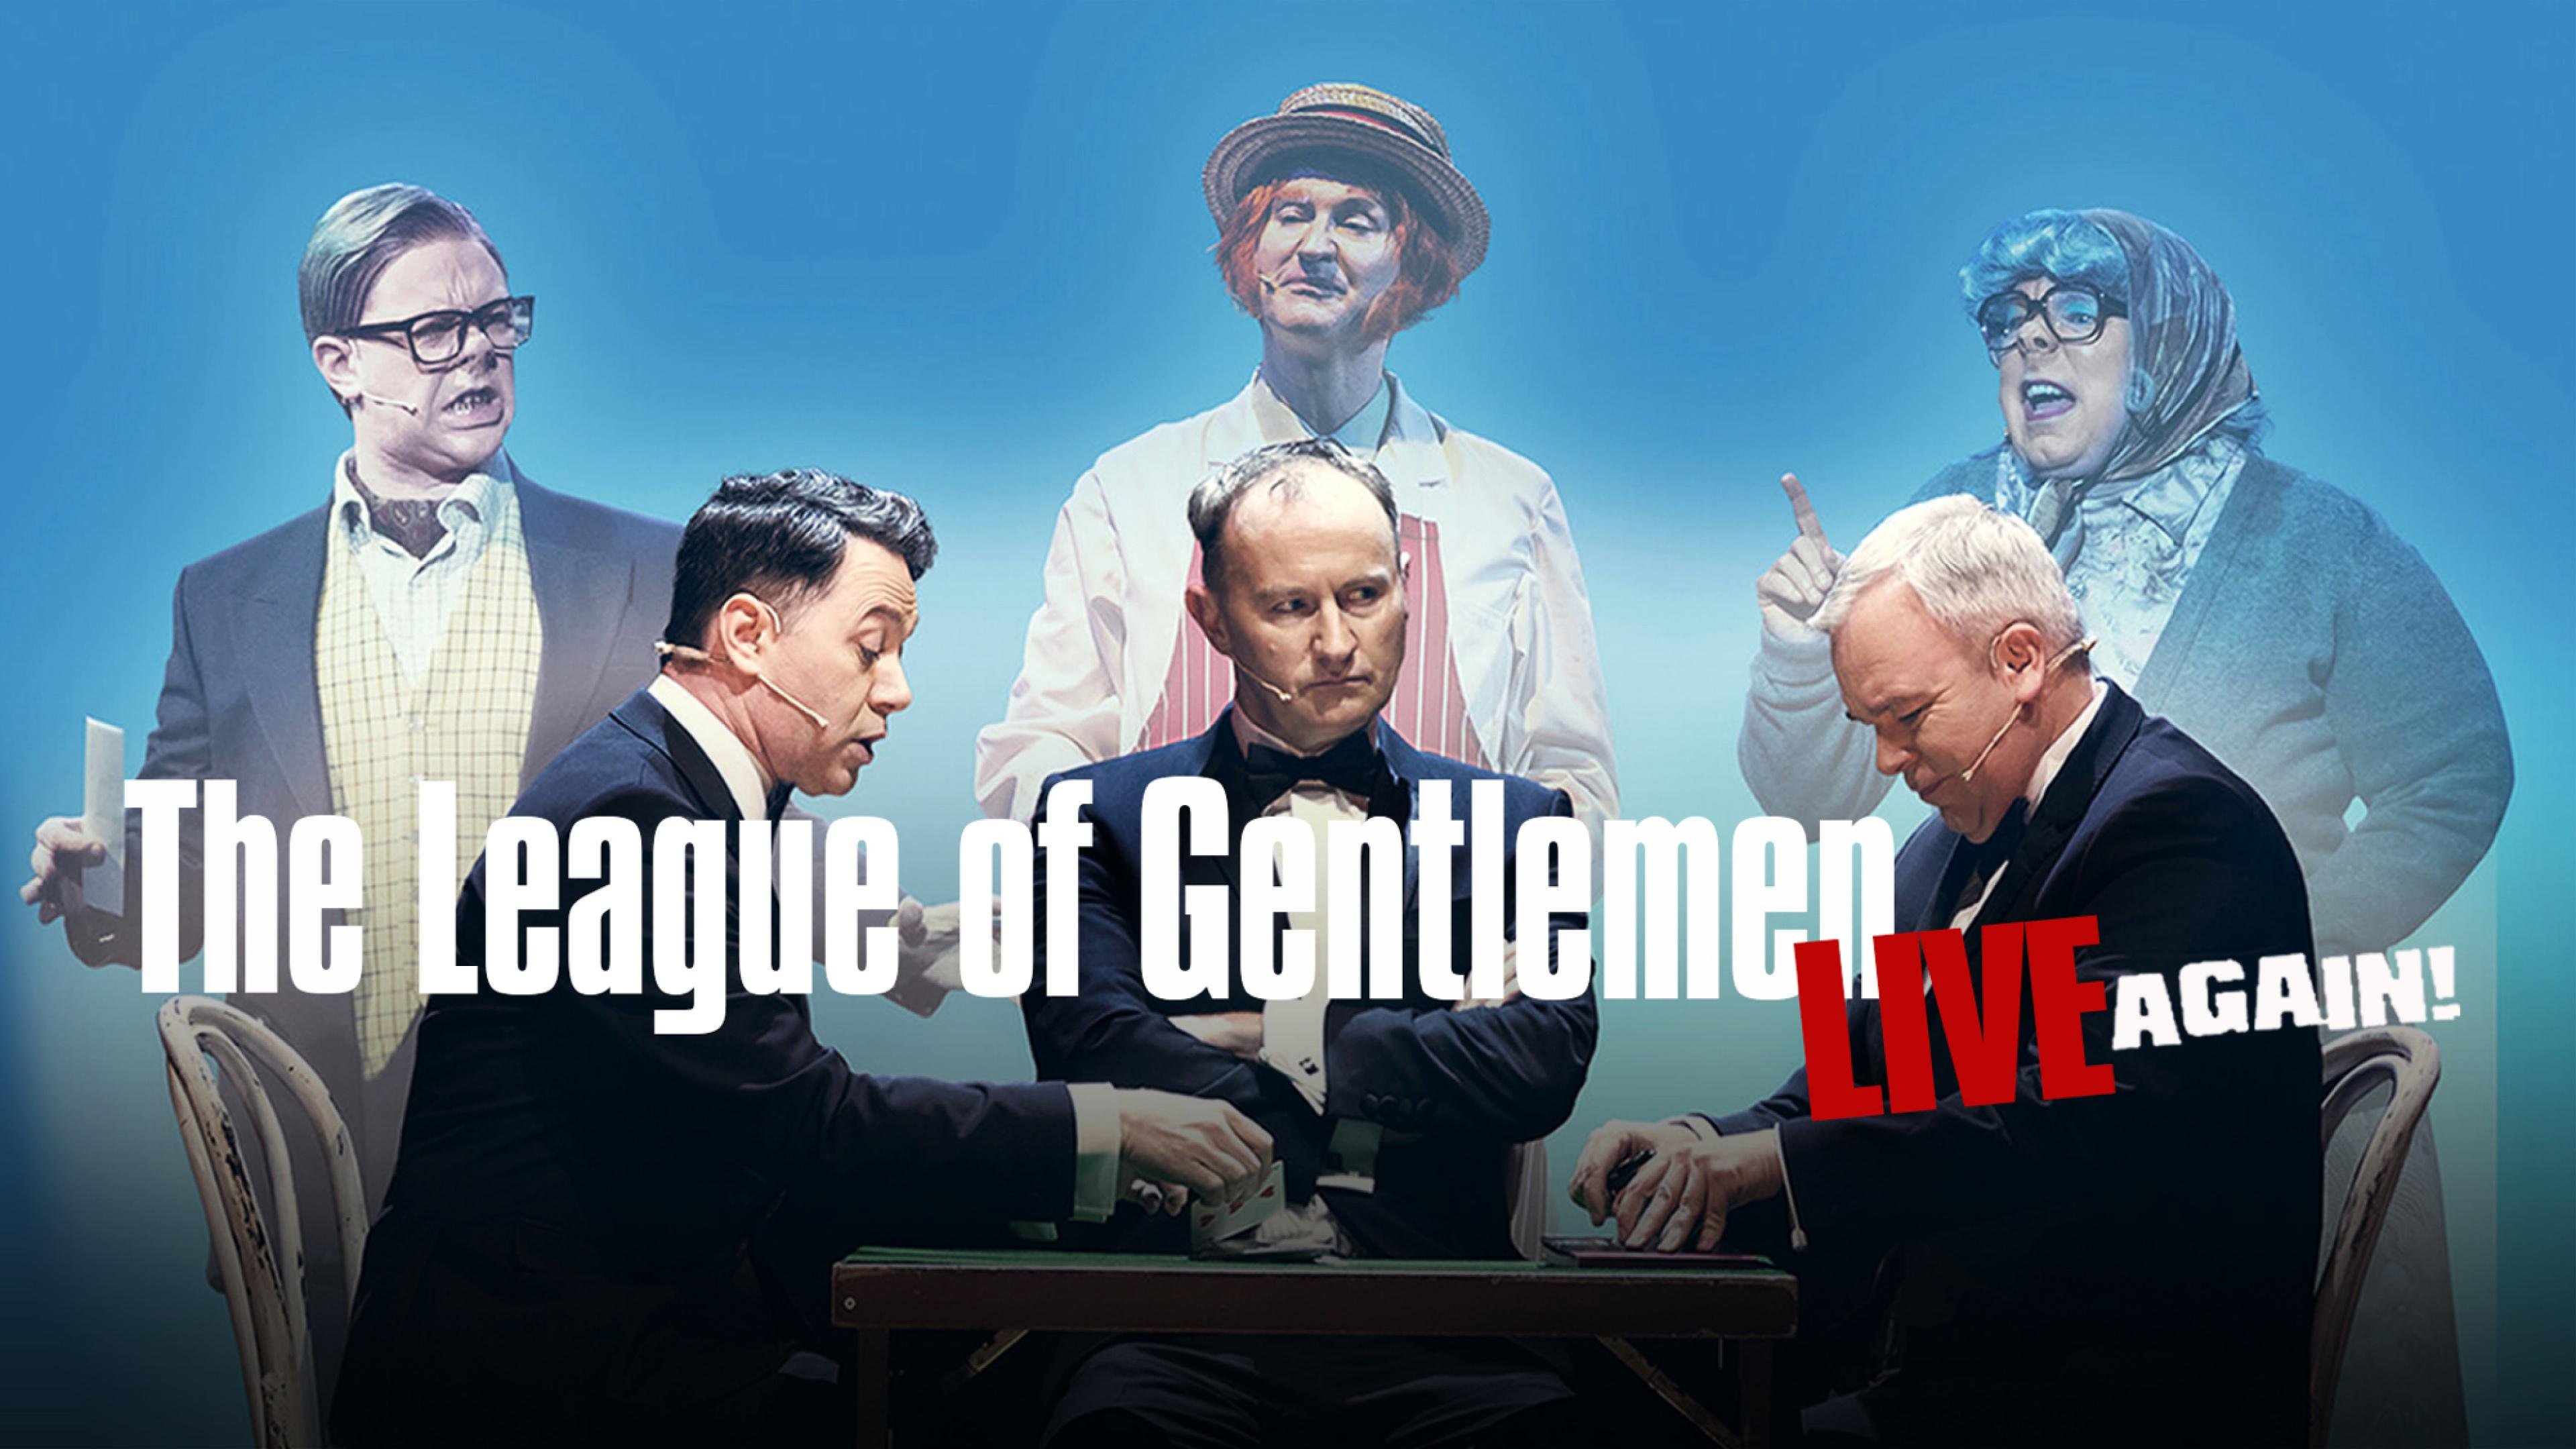 Watch The Gentlemen's League